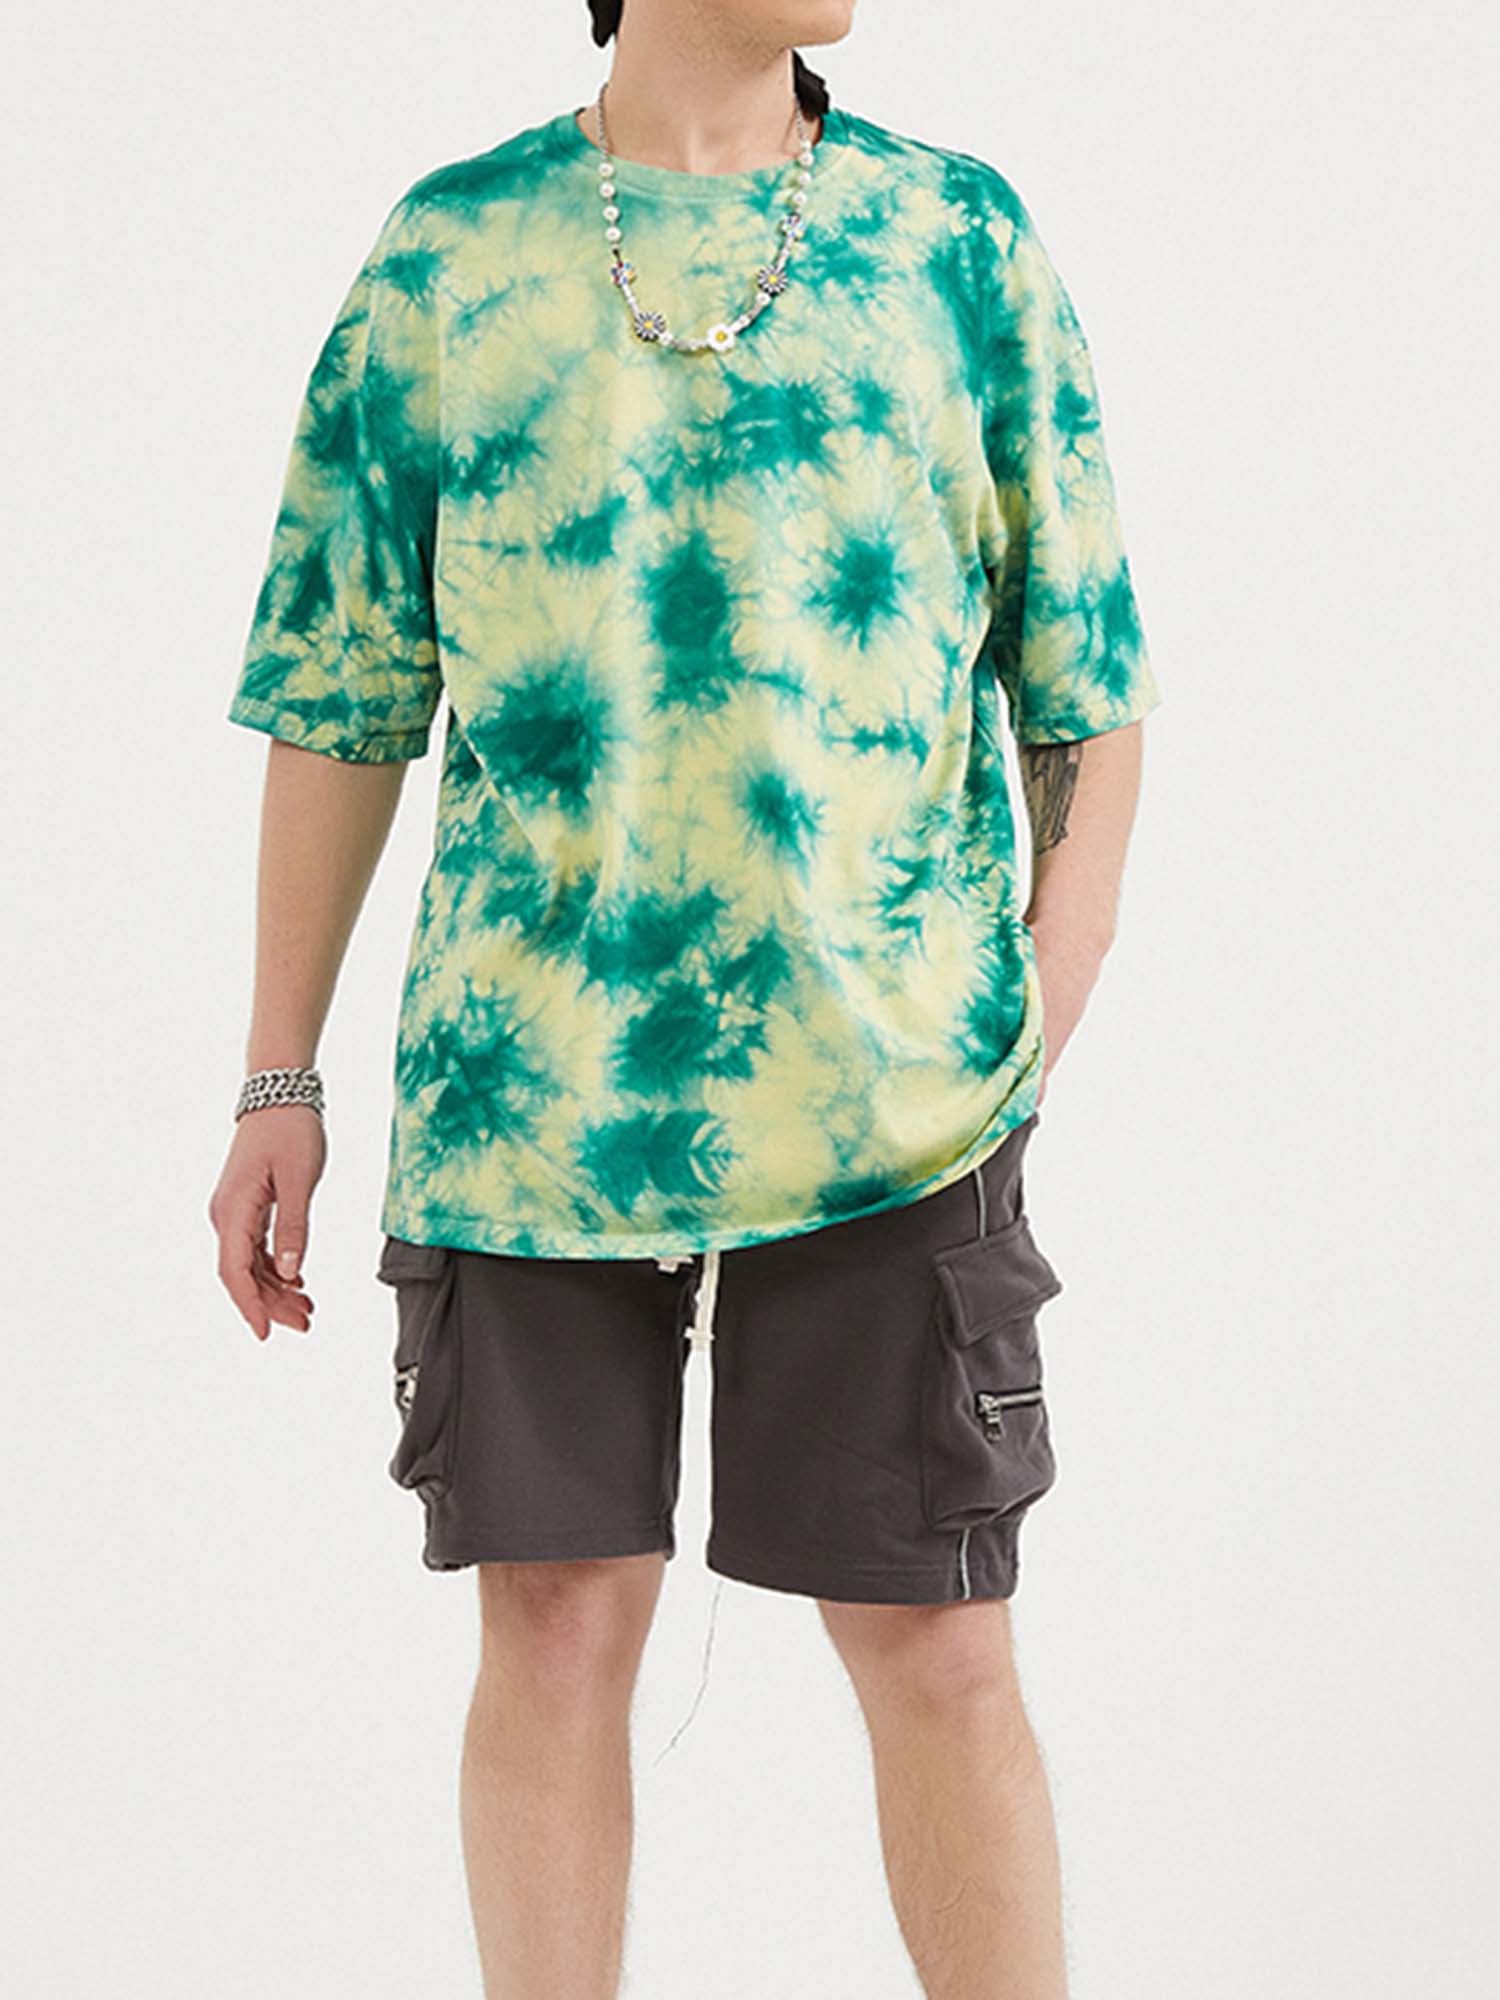 JUSTNOTAG T-shirt à manches courtes 100% coton irisé vert forêt - Tie Dye